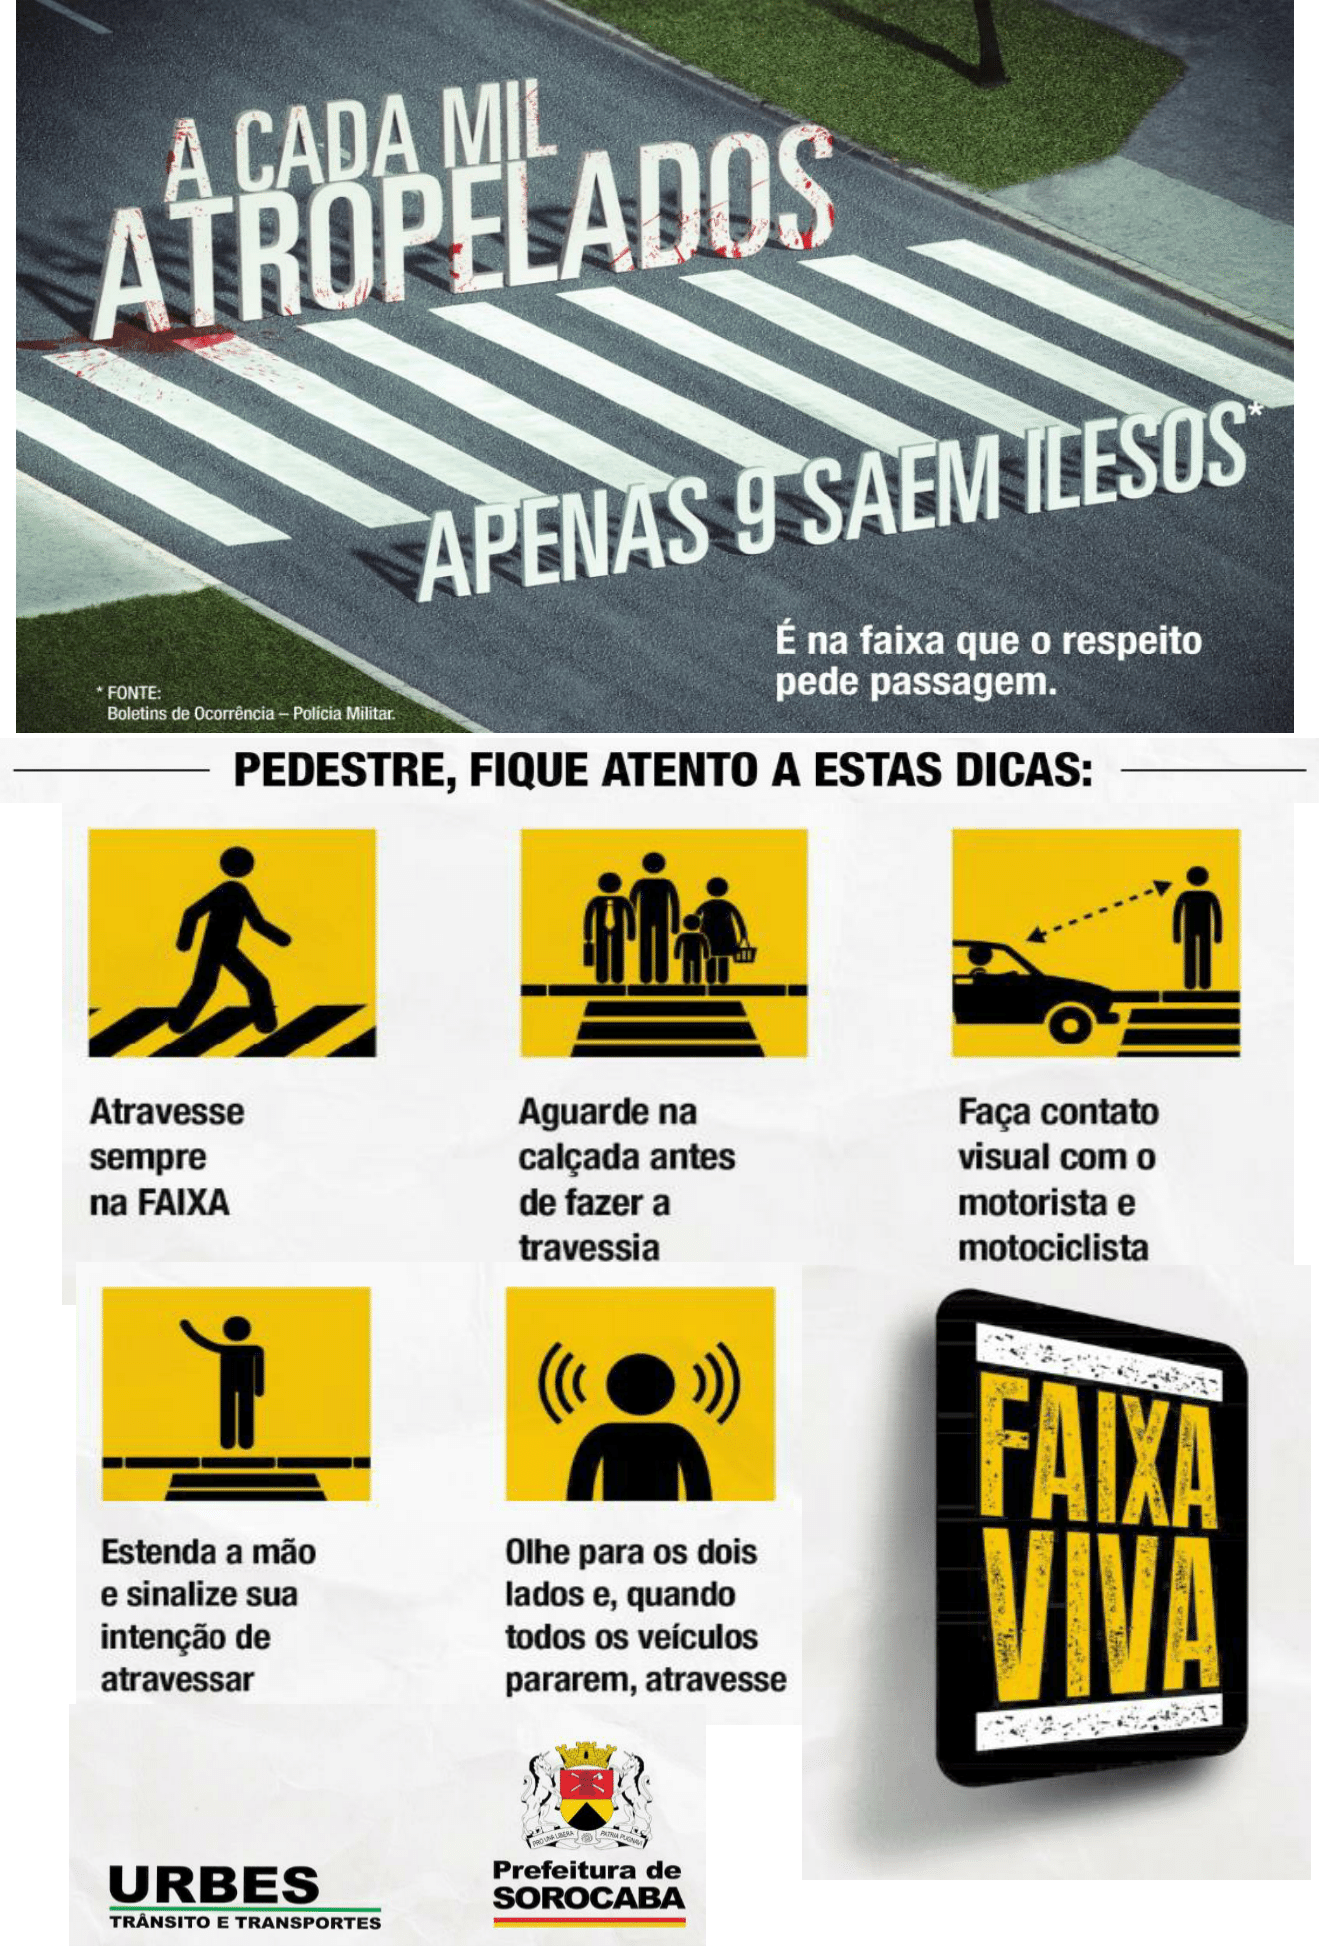 Recomendações ao Motorista, Campanha Faixa Viva - www.santo…